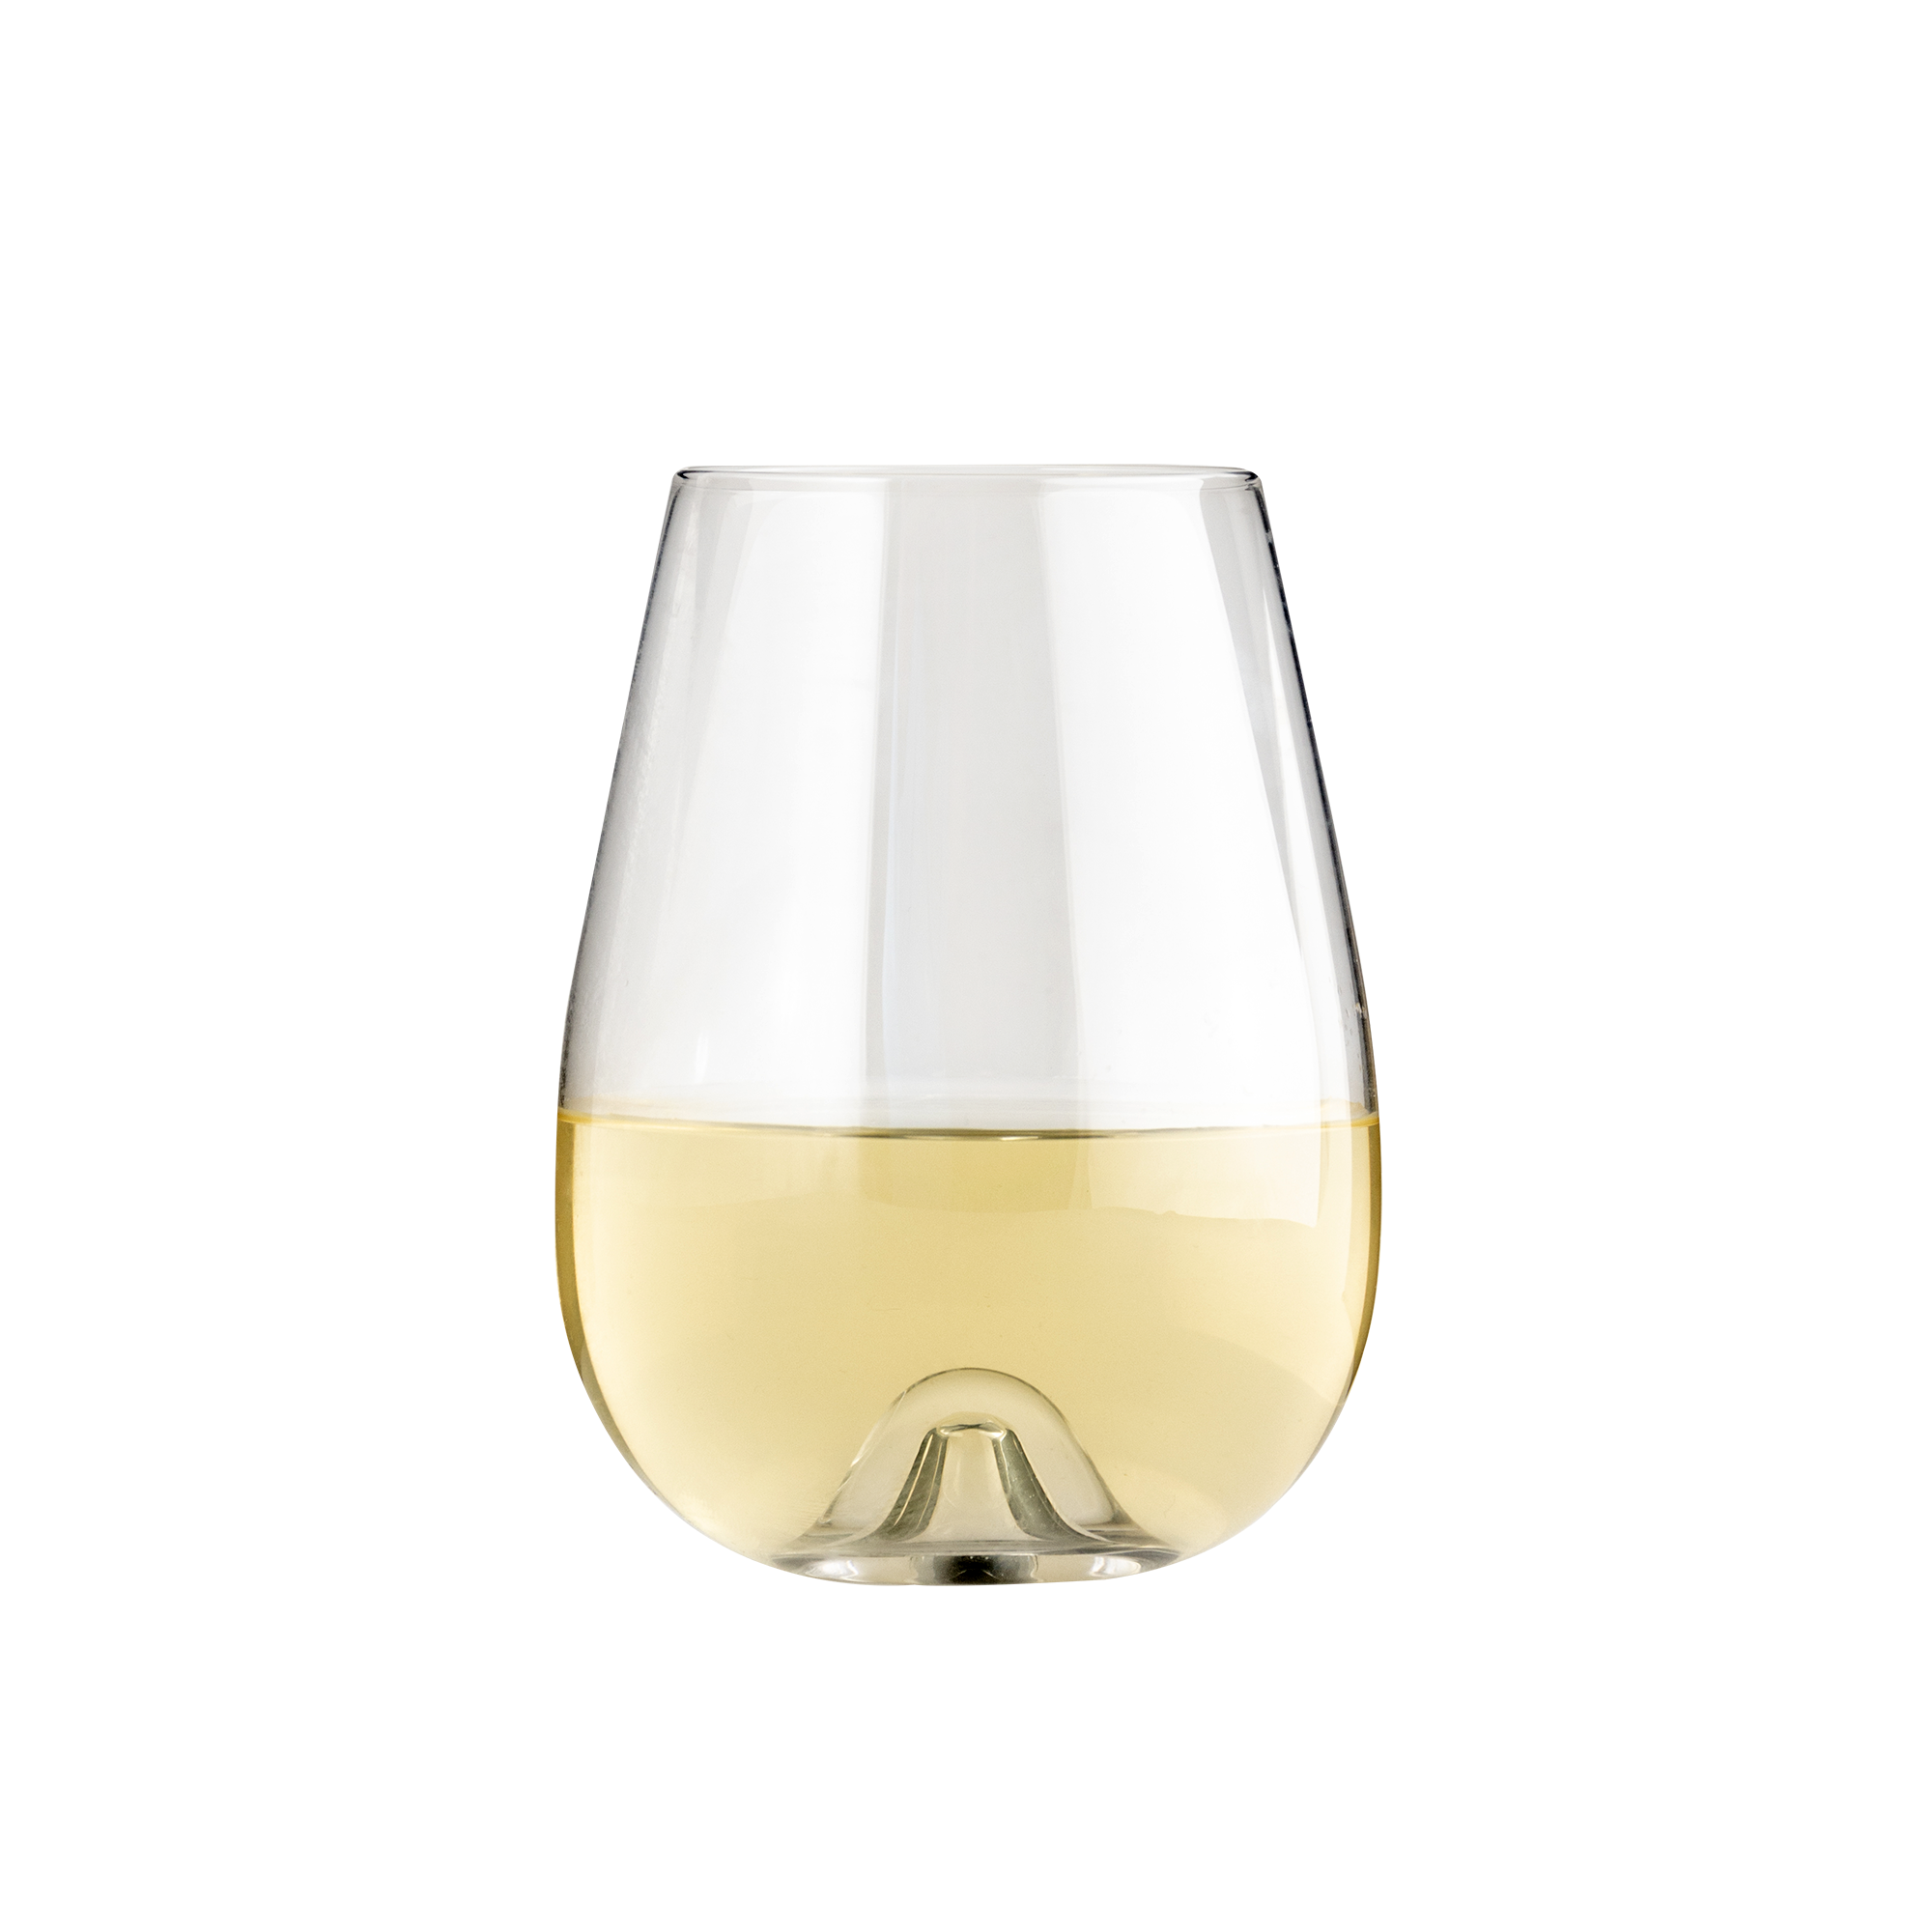 Vulcano Stemless Wine Glass